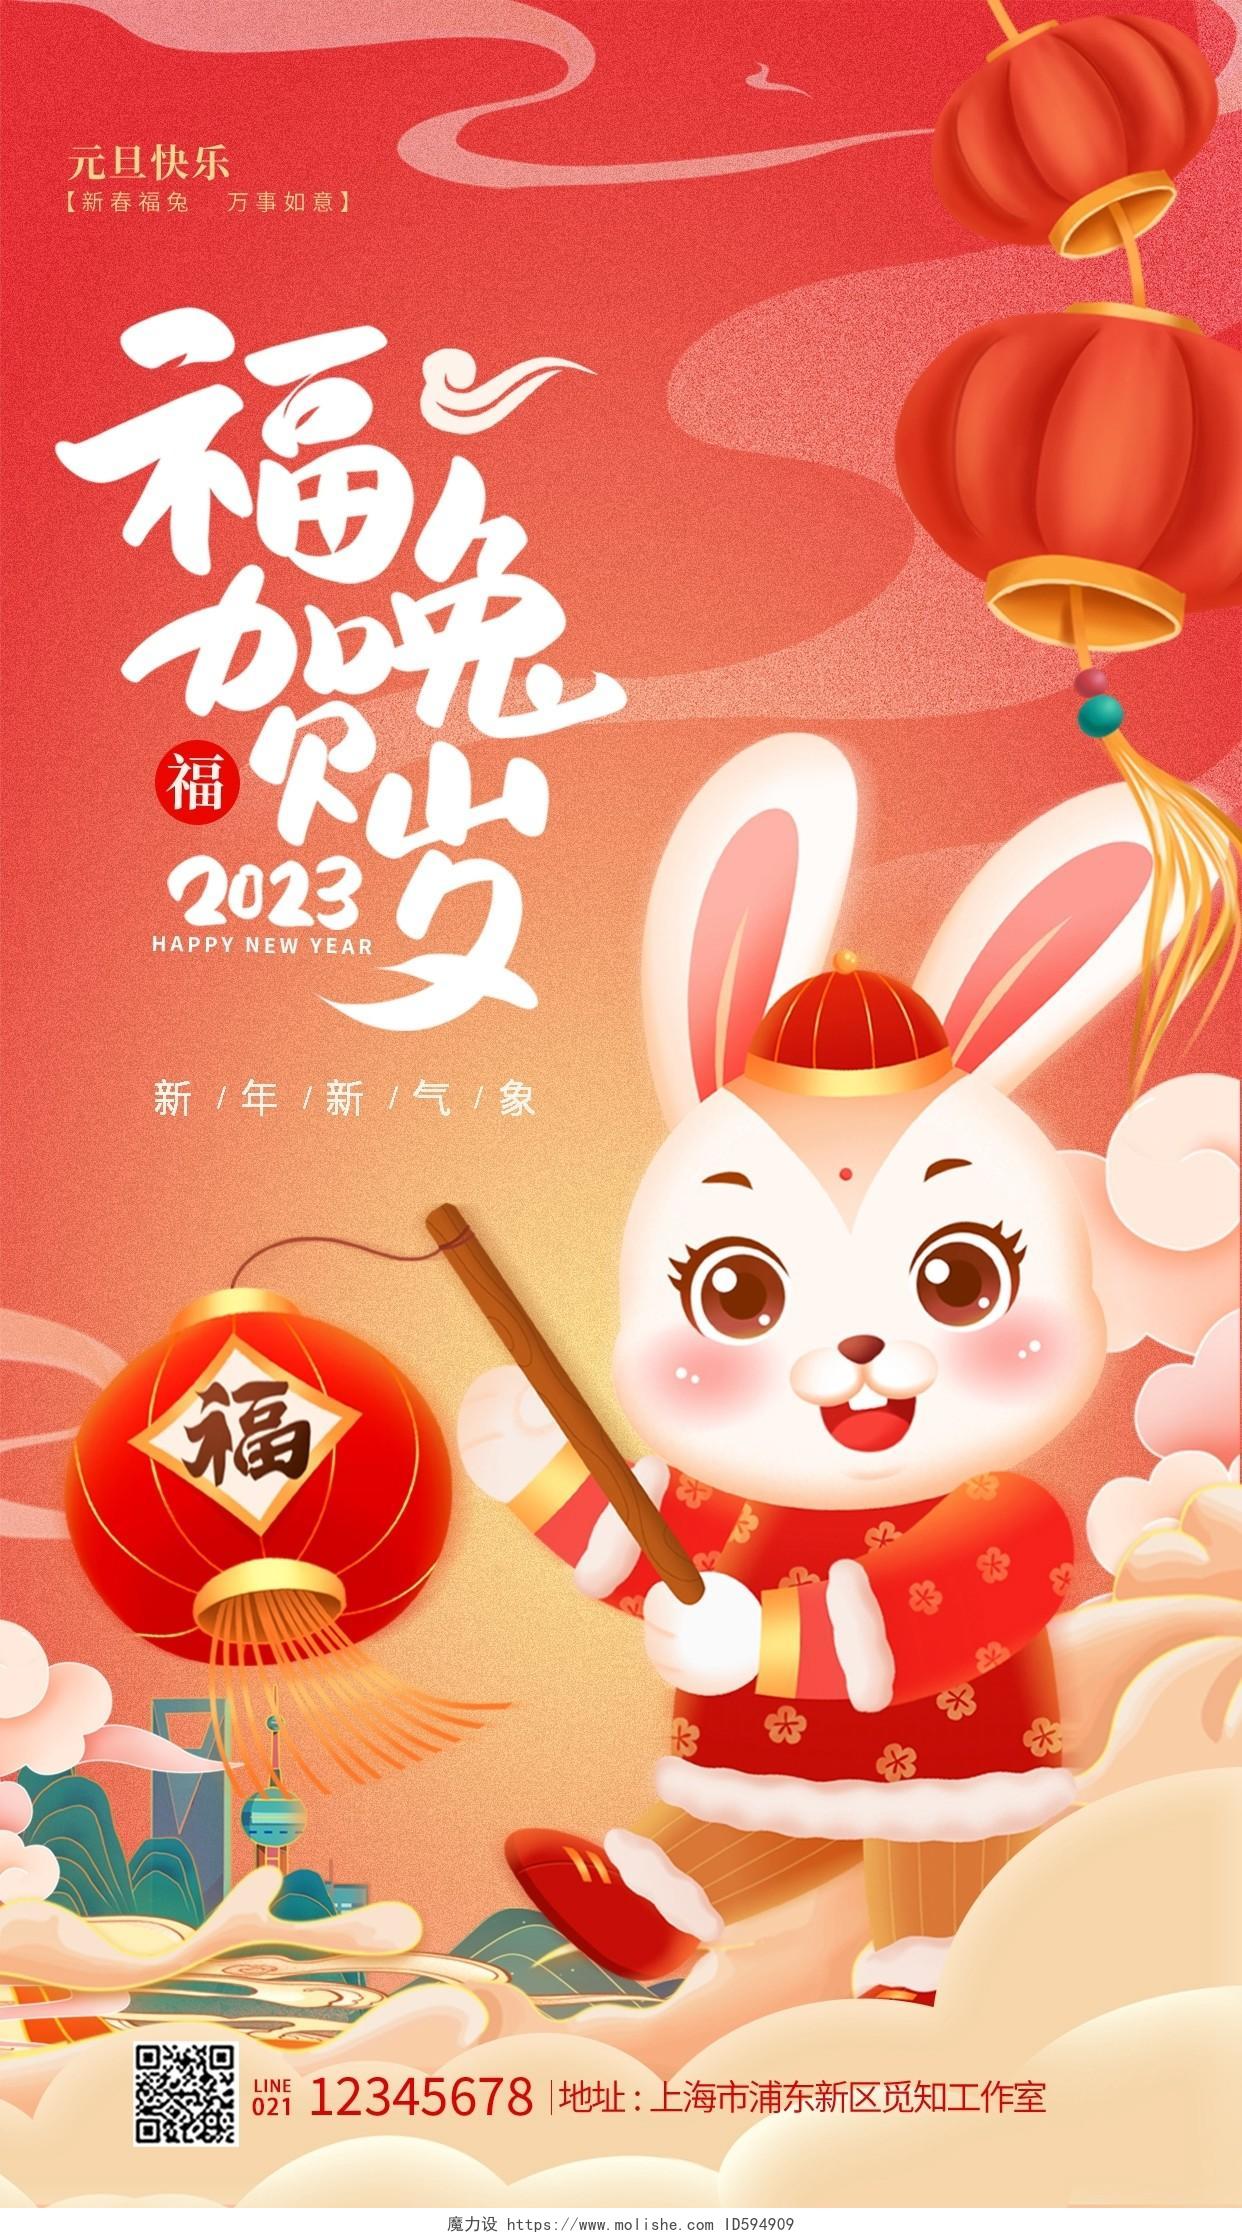 红色插画风福兔贺岁2023兔年新年新春手机宣传海报